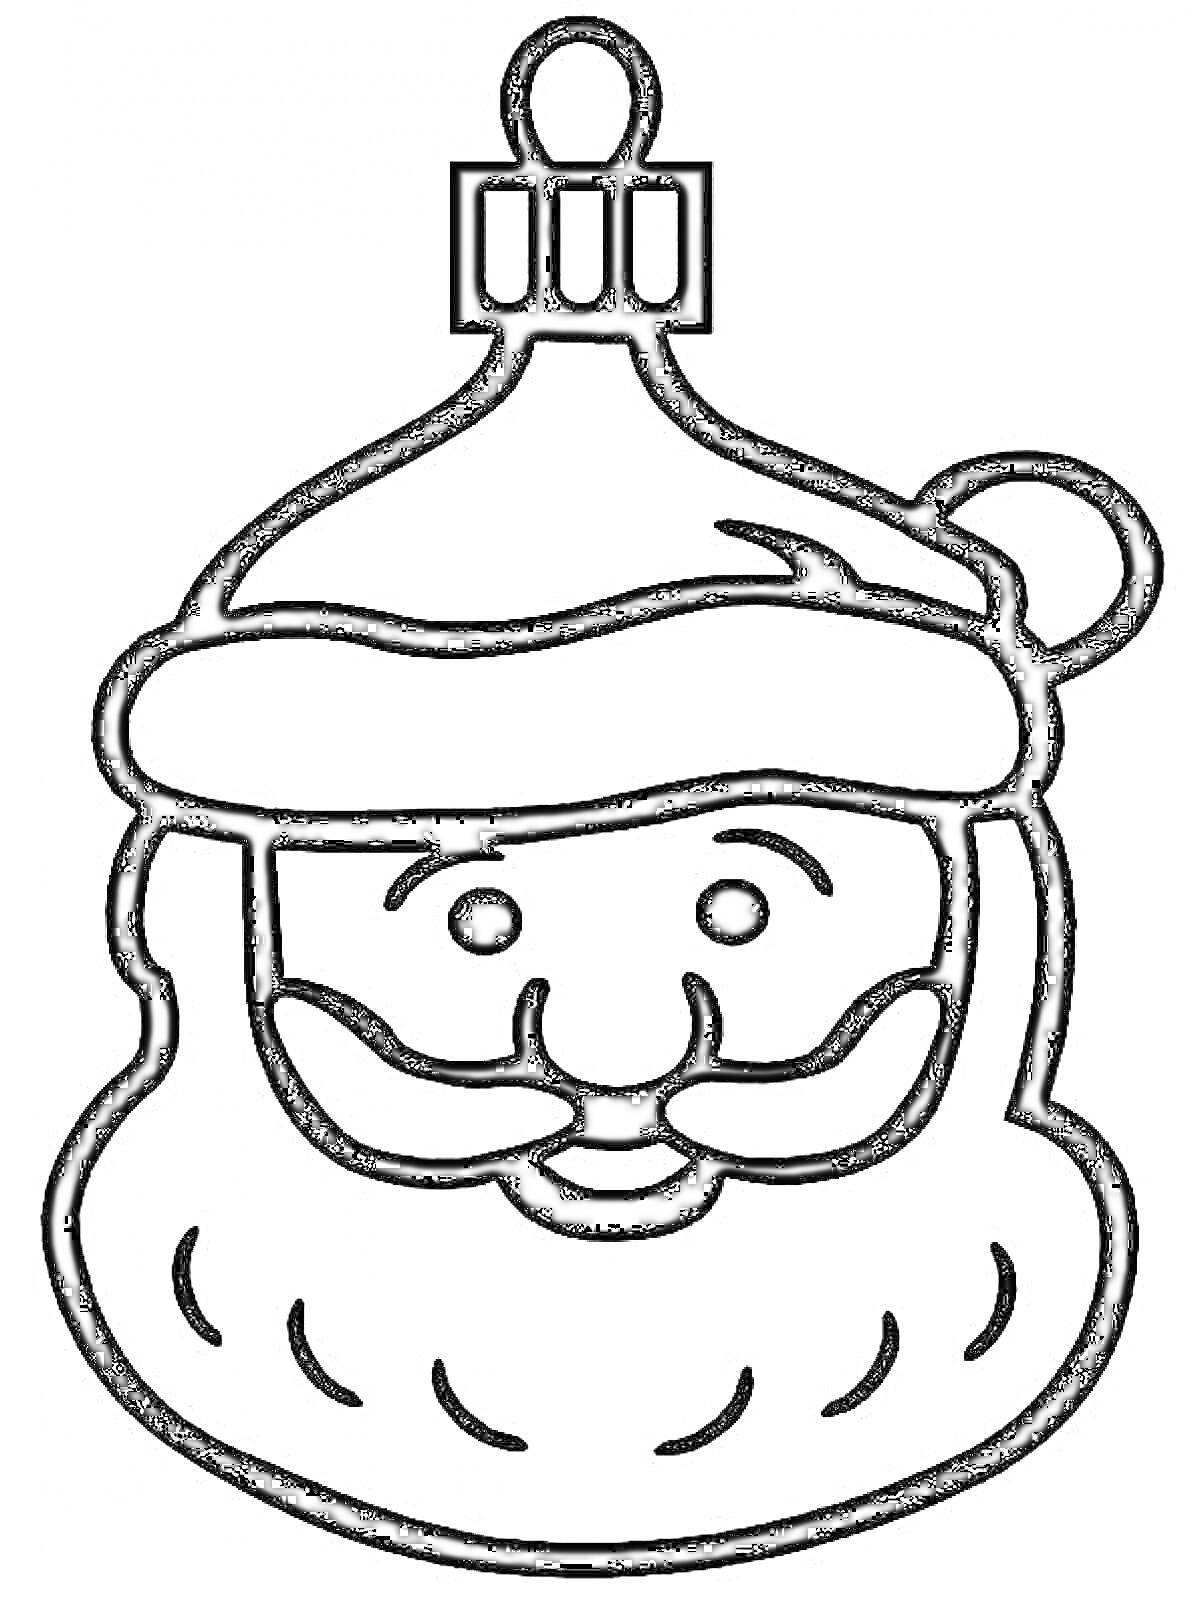 Раскраска Елочная игрушка в виде лица Деда Мороза с шапкой и бородой